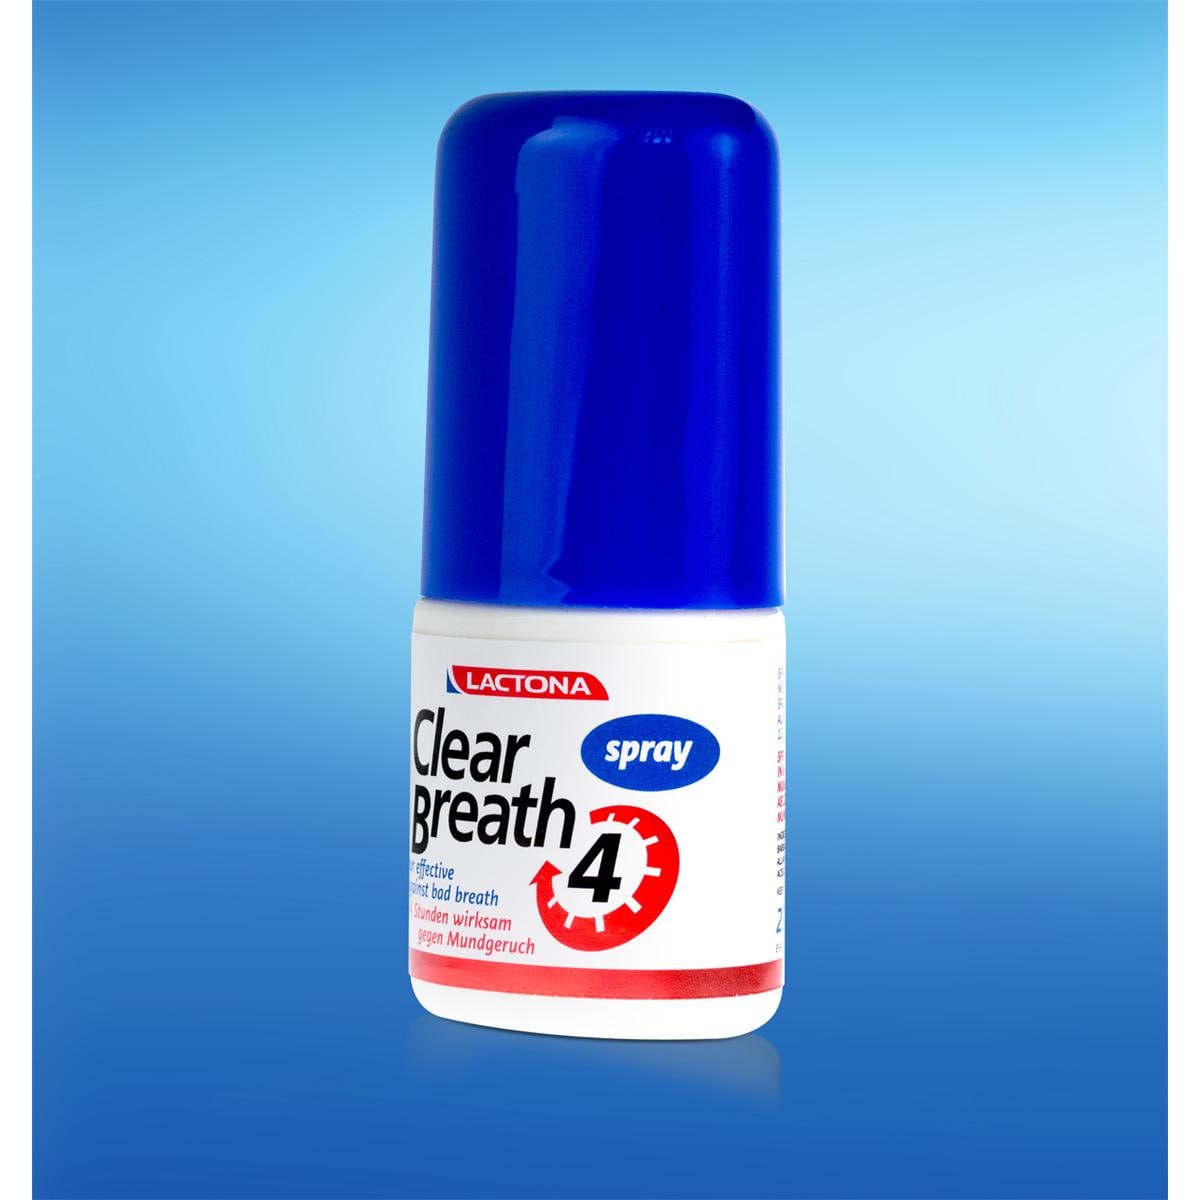 Clear Breath - Spray, 25 ml